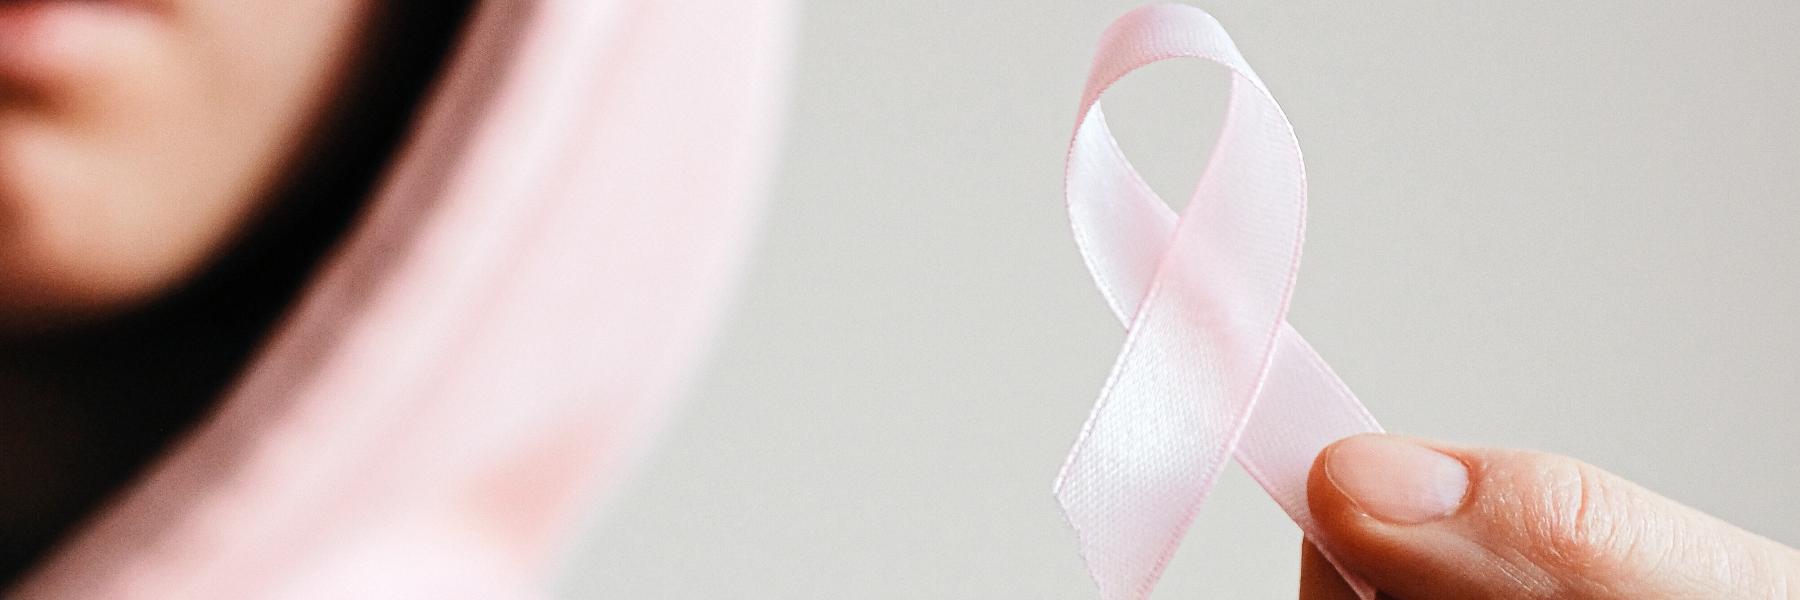 علامات تحذيرية تدل على احتمالية الإصابة بسرطان الثدي